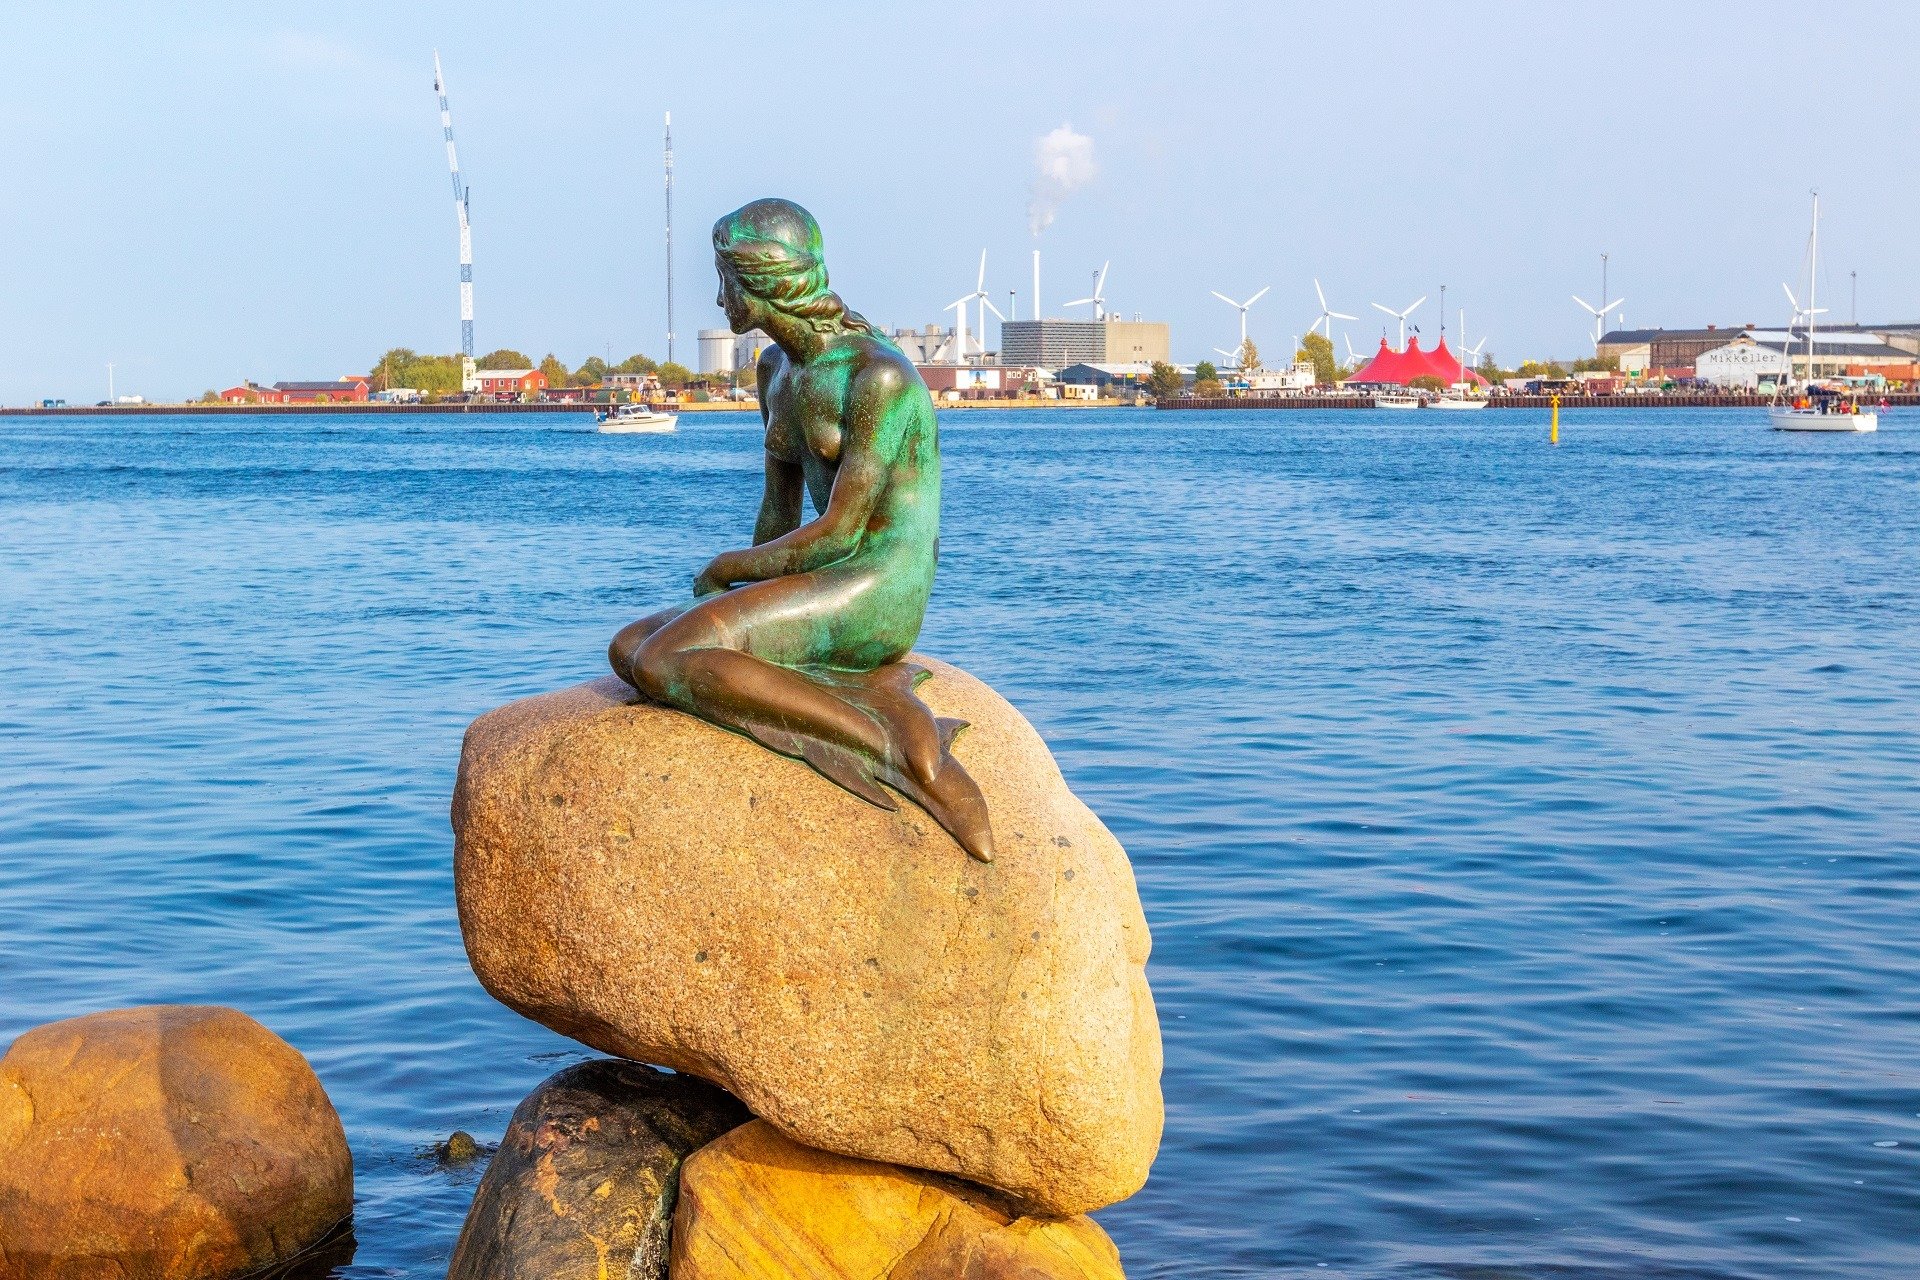 Estatua de bronce de "La Sirenita" en Copenhagen, Dinamarca. | Fuente: Shutterstock